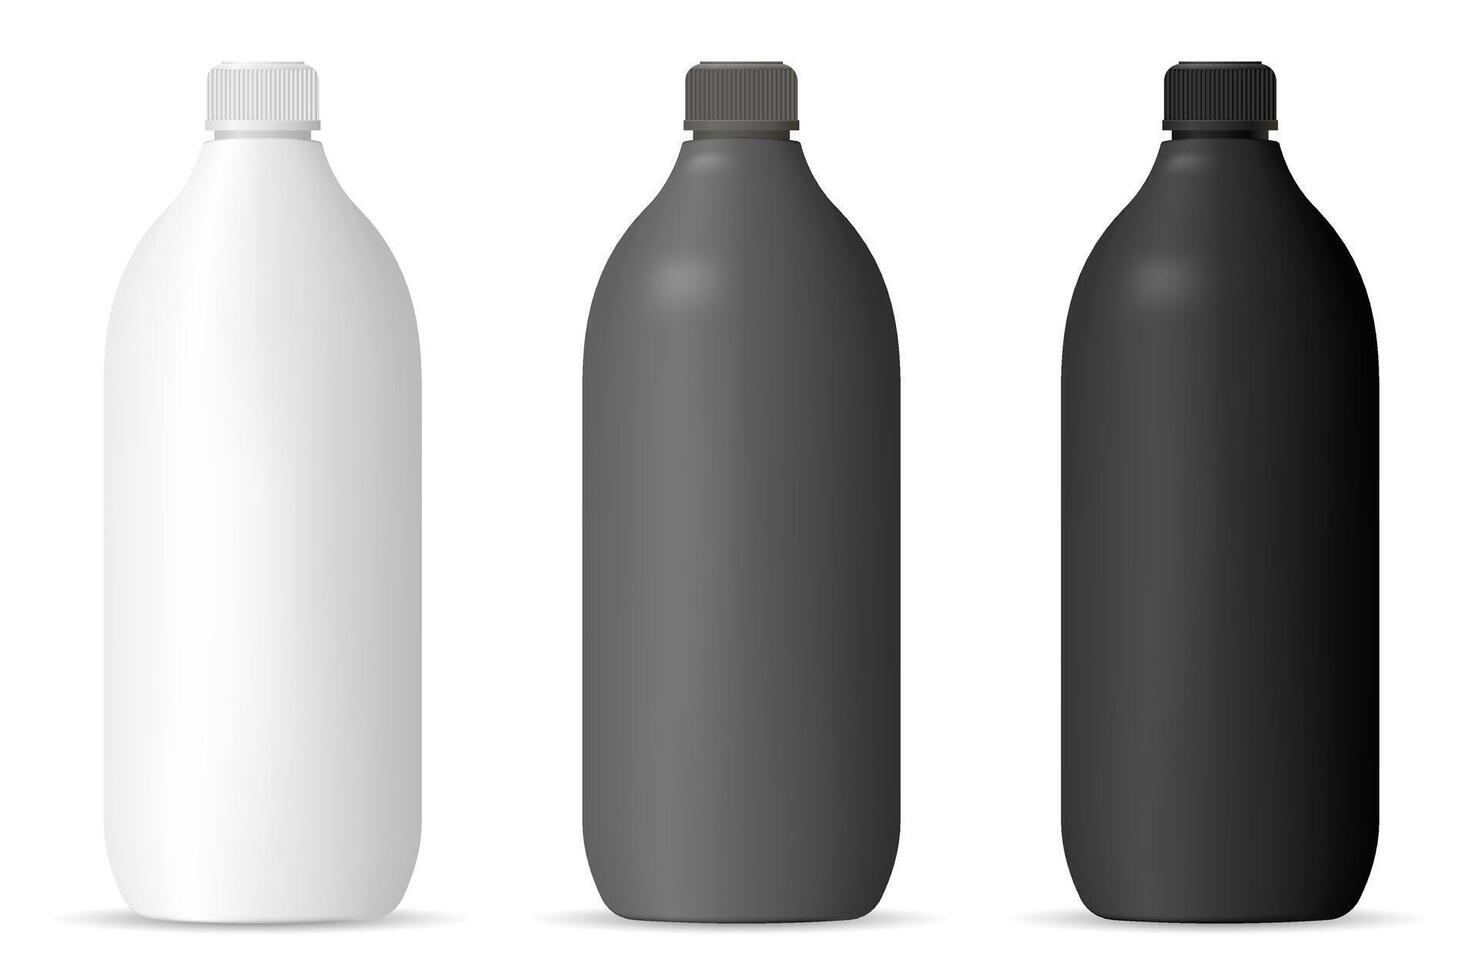 botellas Bosquejo conjunto para cosmético o casa productos cilindro embalaje contenedores en mate negro, blanco o gris color el plastico para champú, gel, loción, pelo y cuerpo productos, química. vector